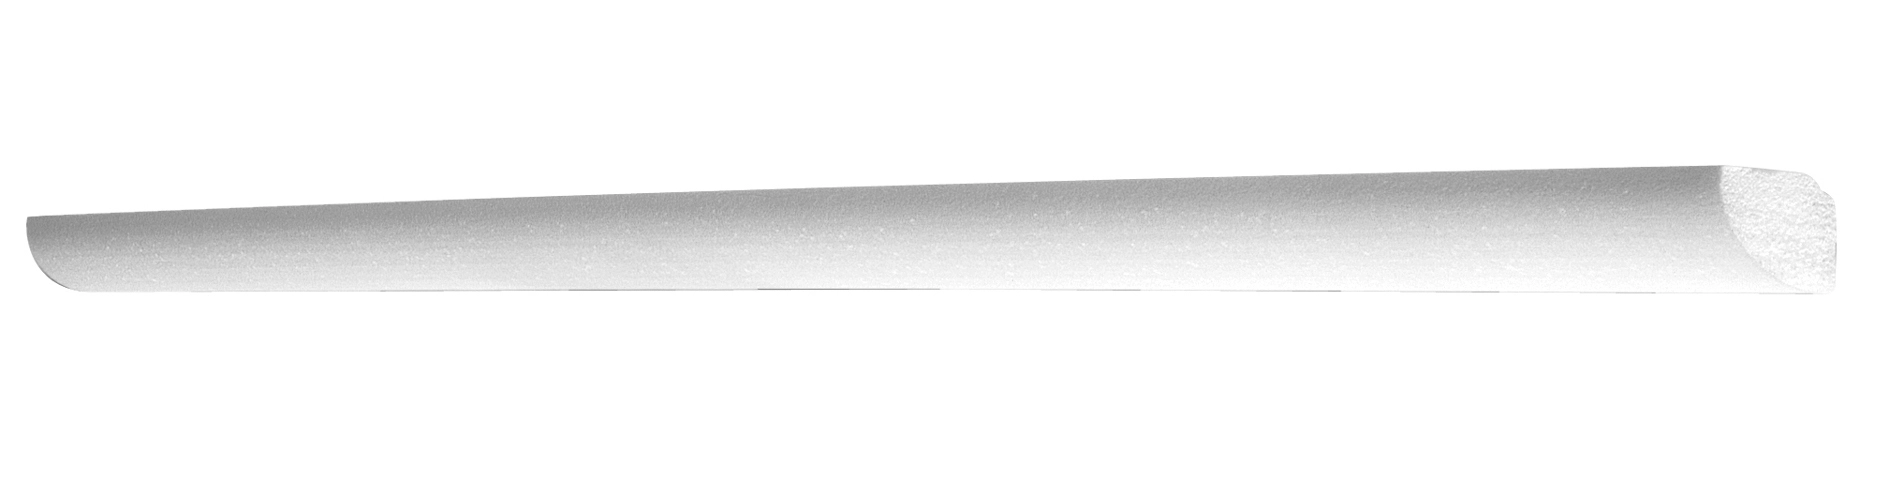 Lichtleiste Karoline Weiß 61 mm x 29 mm Länge 2.000 mm kaufen bei OBI